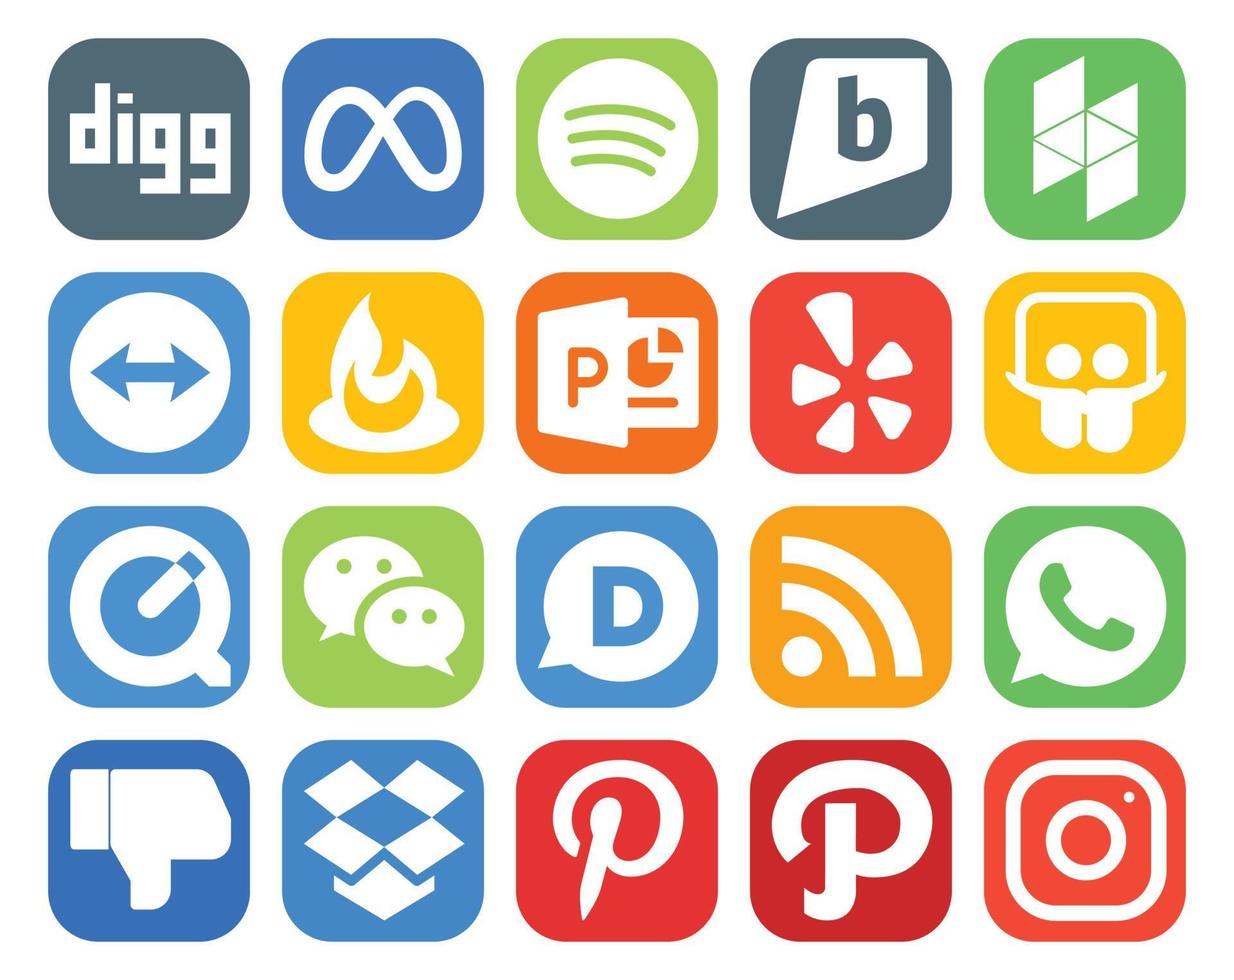 paquete de 20 íconos de redes sociales que incluye aversión rss powerpoint disqus wechat vector